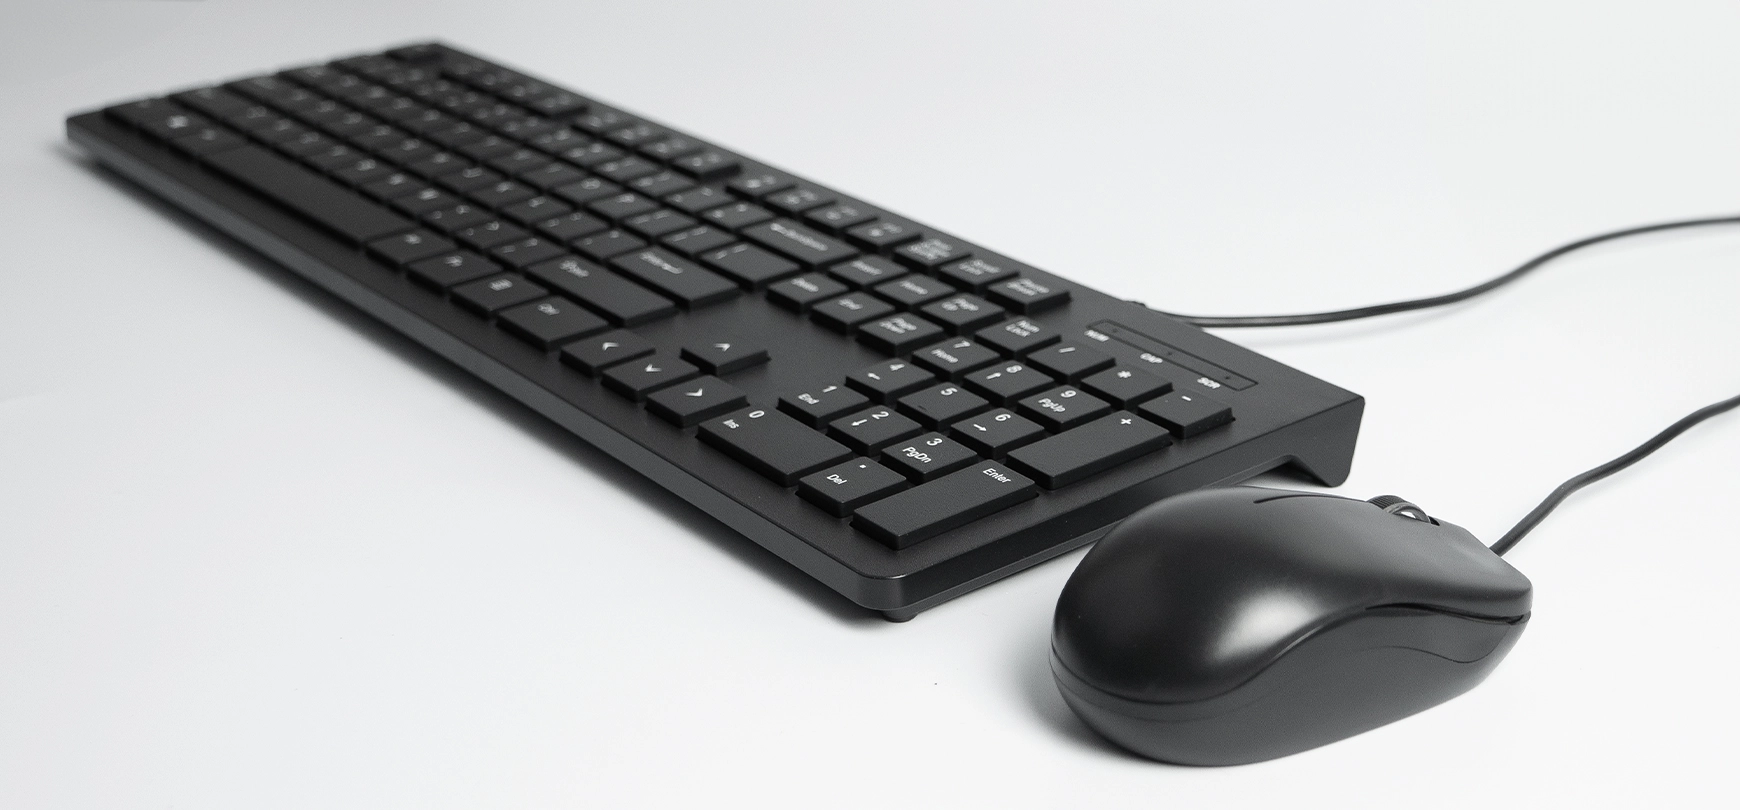 Μινιμαλιστικό σετ υπολογιστή - Ποντίκι και πληκτρολόγιο, μαύρο